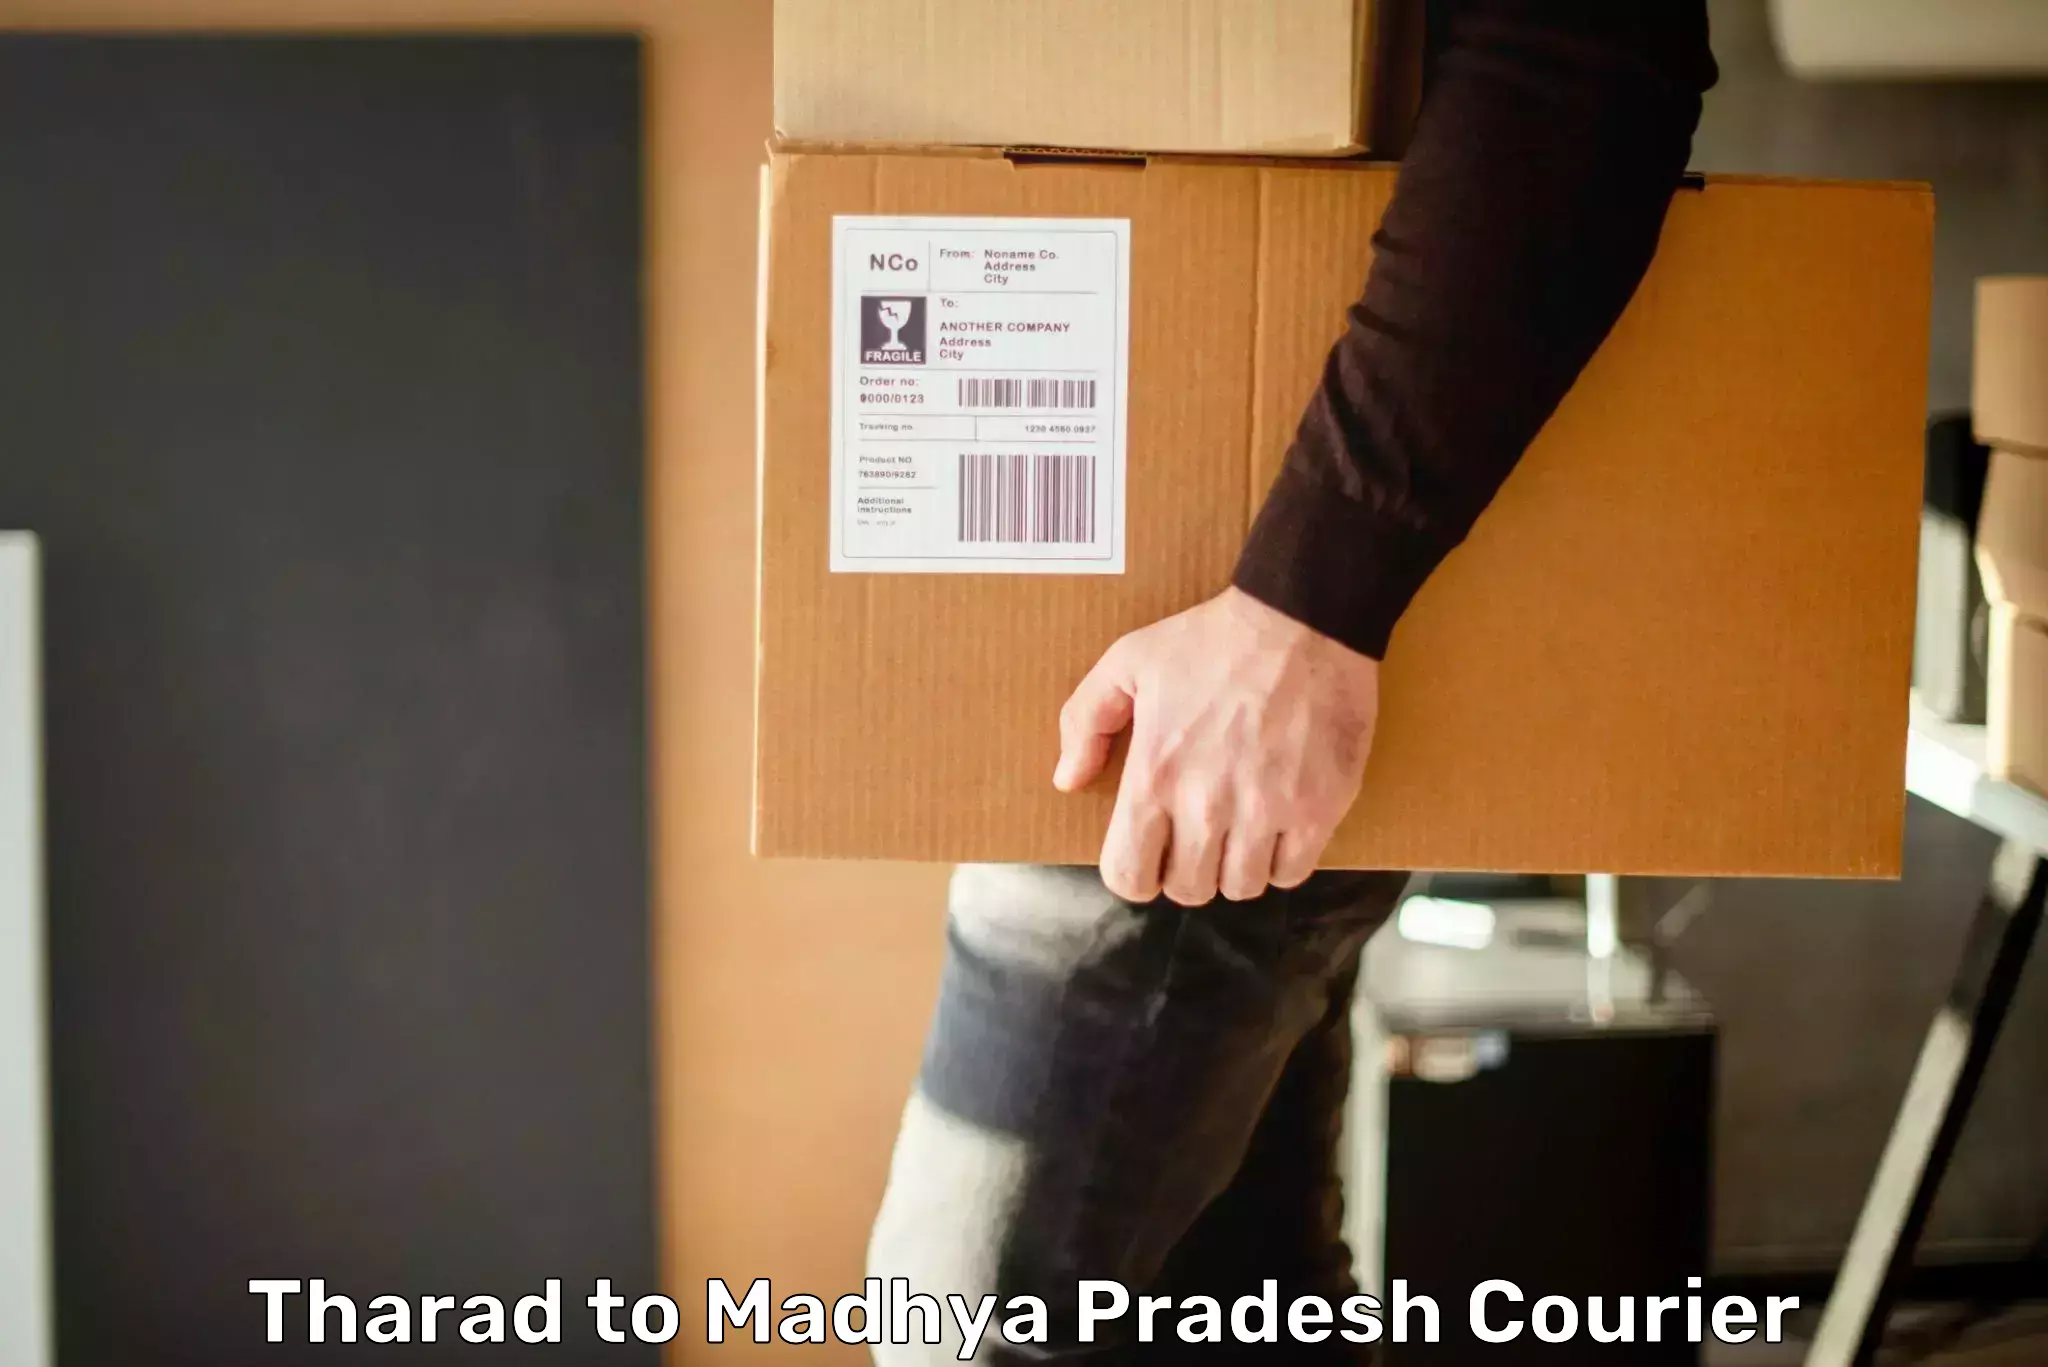 Speedy delivery service Tharad to Sohagi